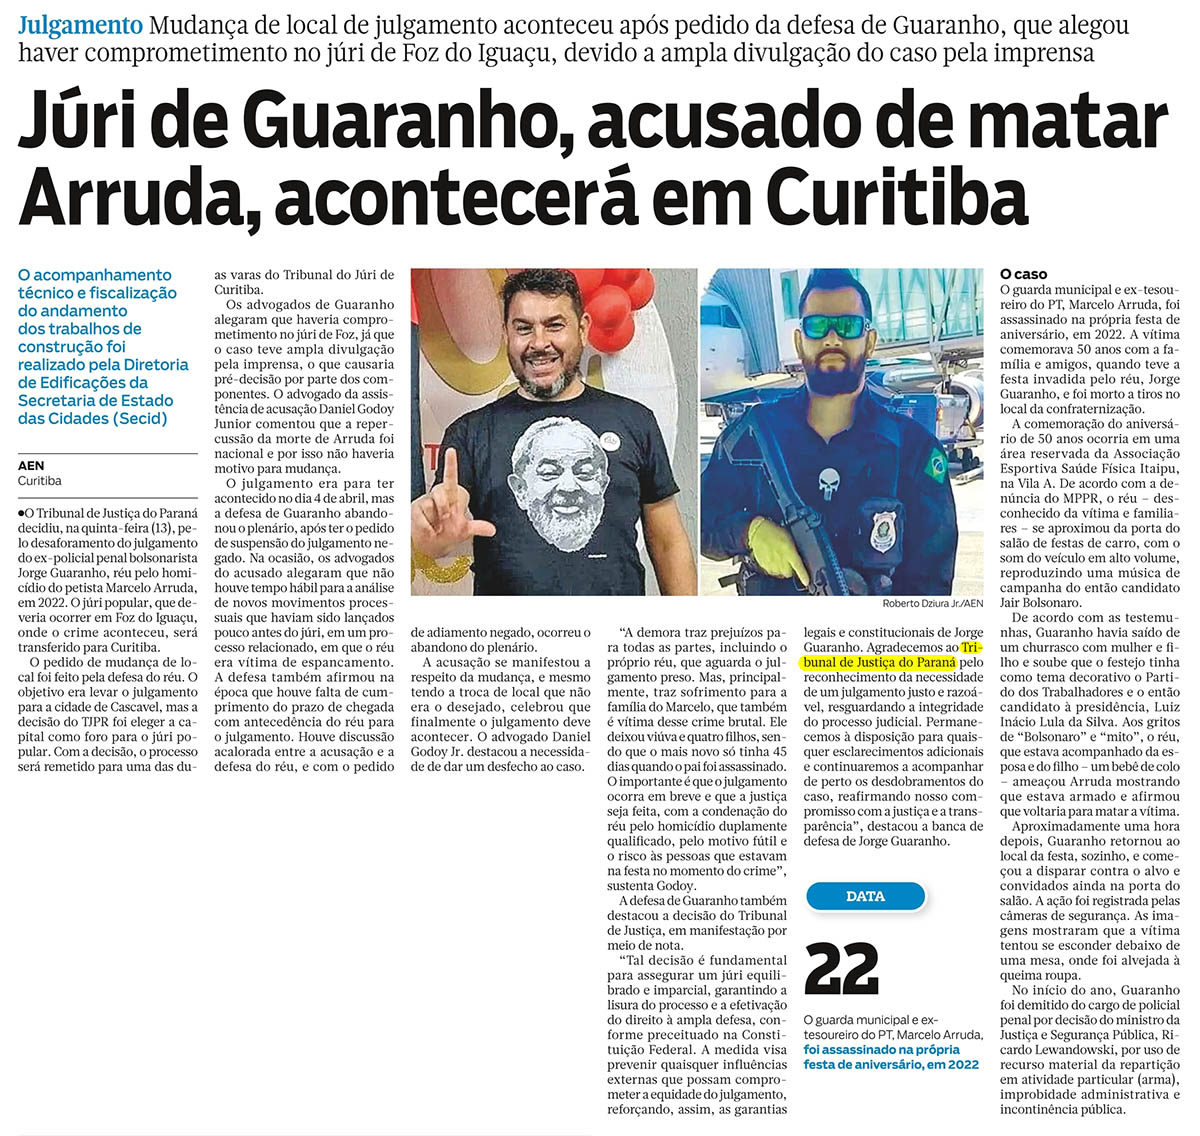 Júri de Guaranho, acusado de matar Arruda, acontecerá em Curitiba - image 1